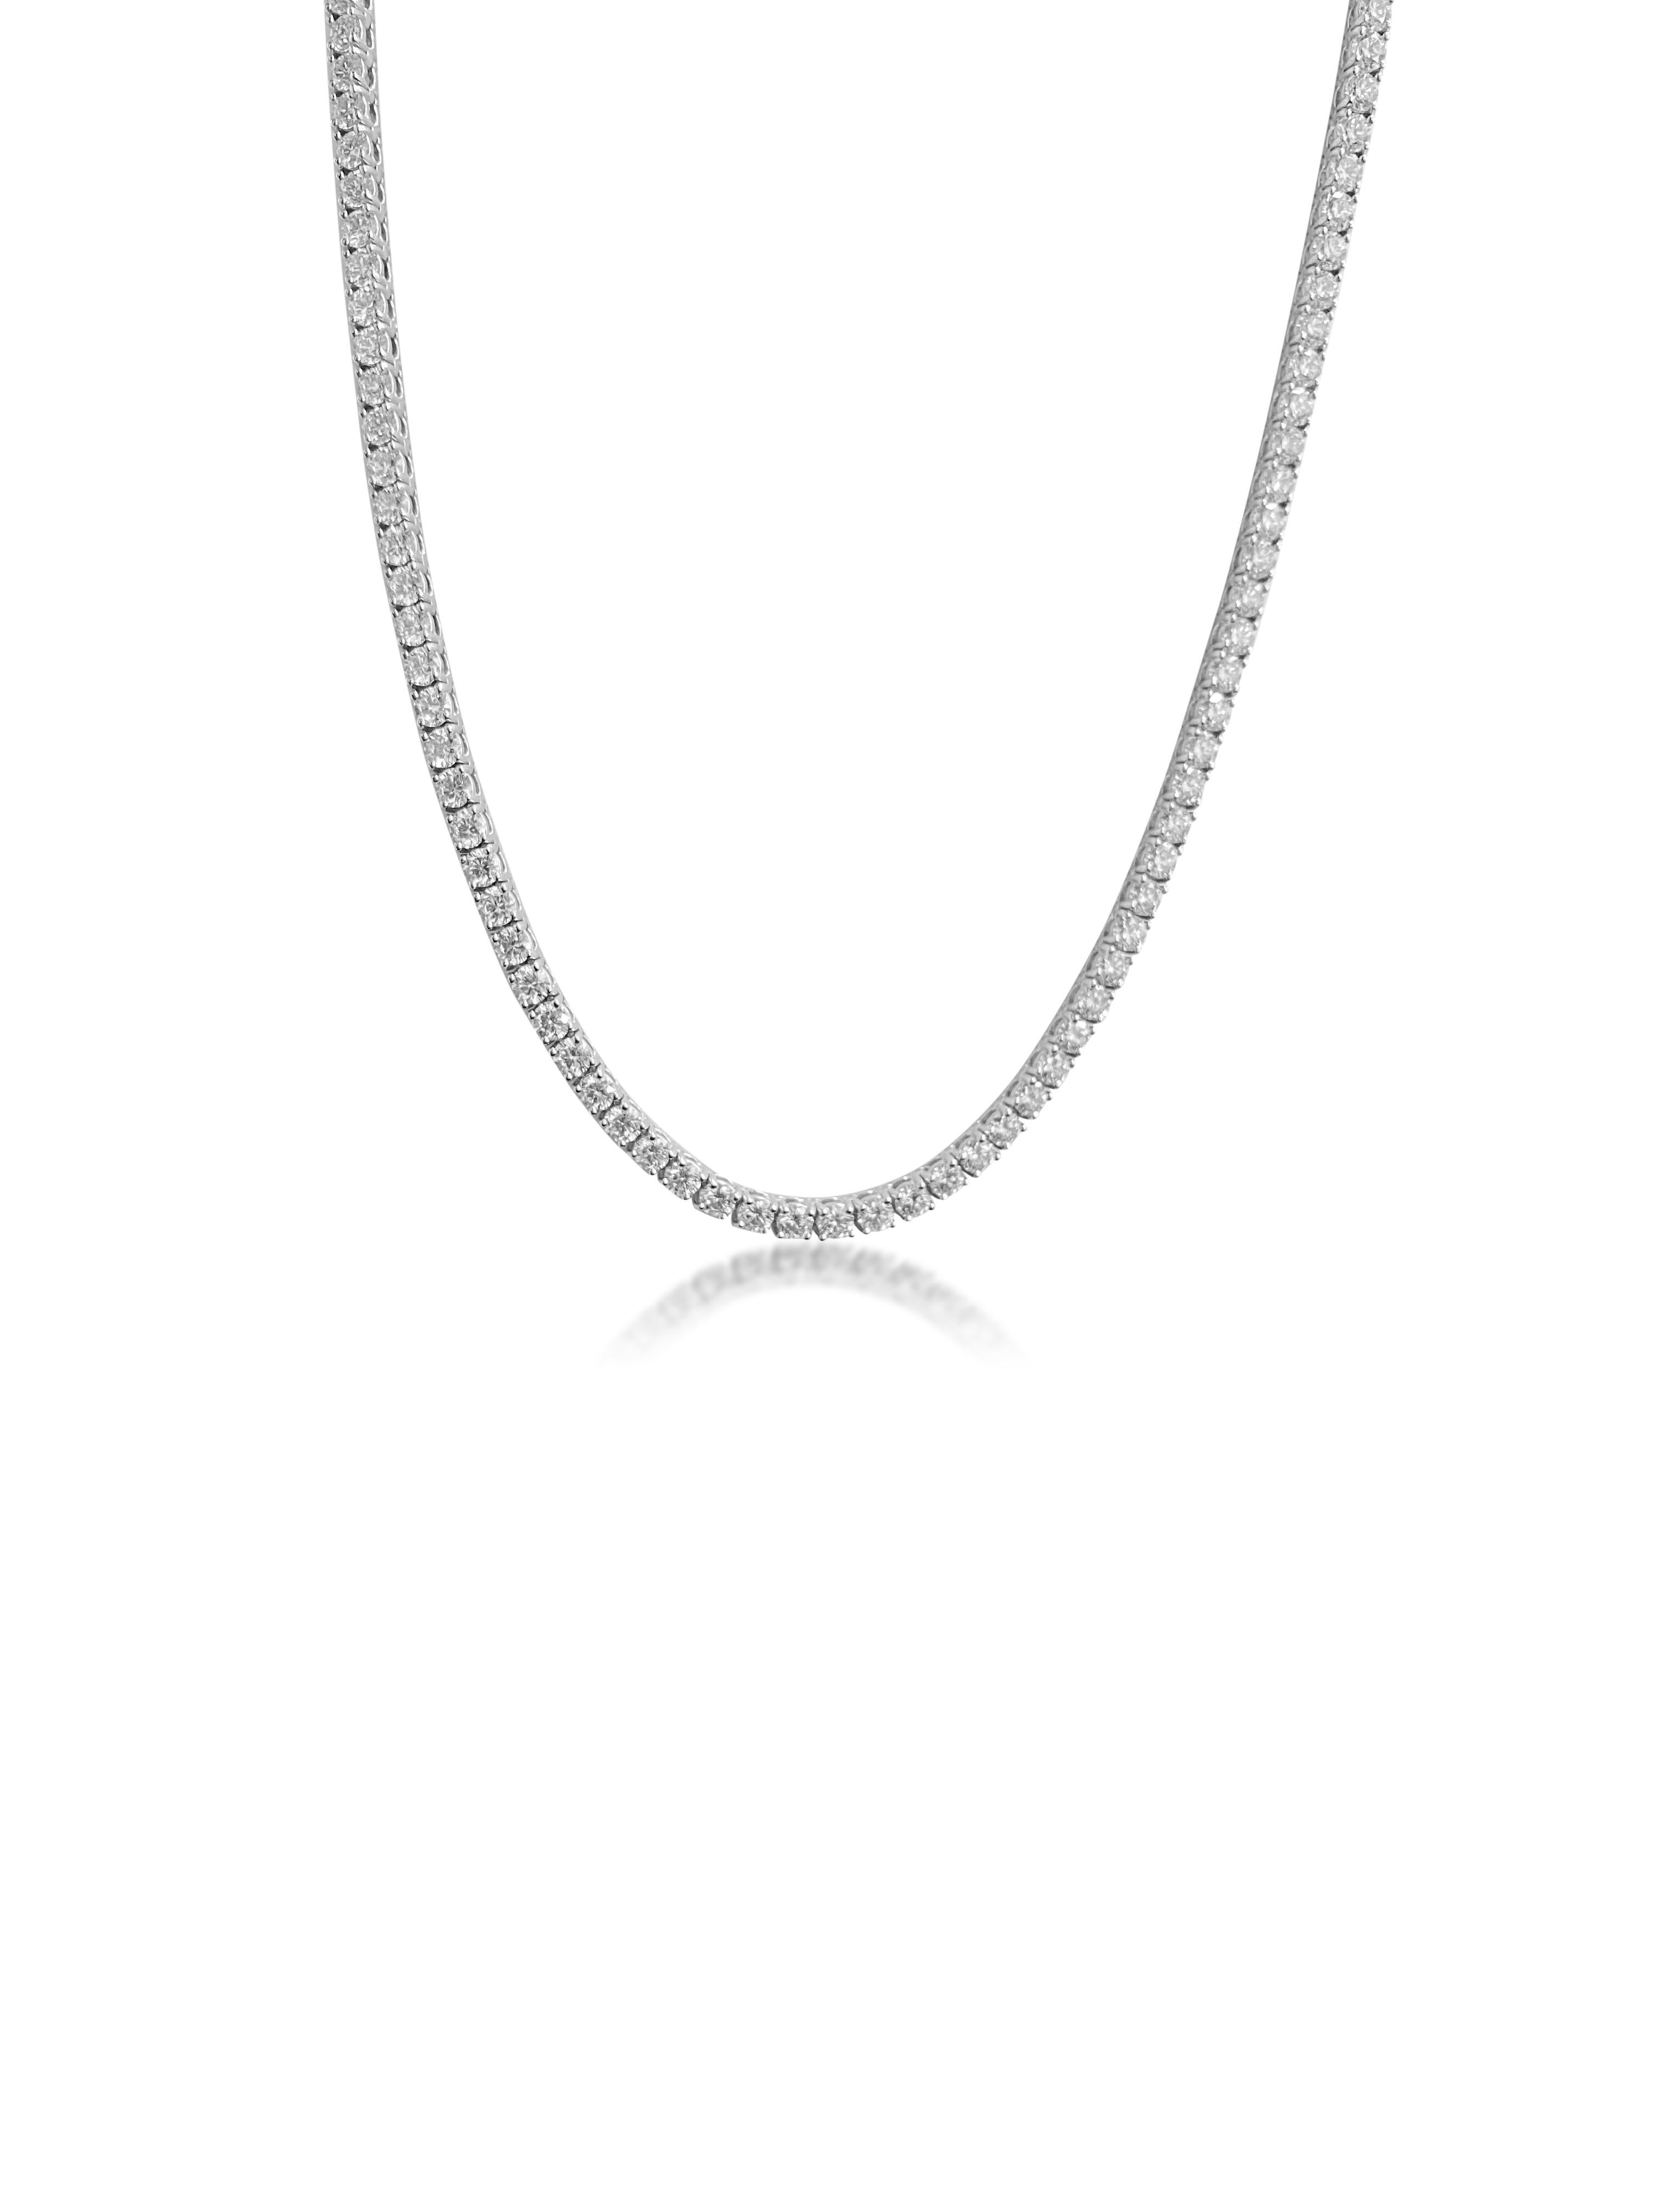 Confectionné en luxueux or blanc 14 carats, ce superbe collier est orné de 14,5 carats de diamants ronds de taille brillant, d'une pureté VVS et d'une brillance inégalée. D'une longueur de 17 pouces, cette pièce exquise respire l'élégance et la